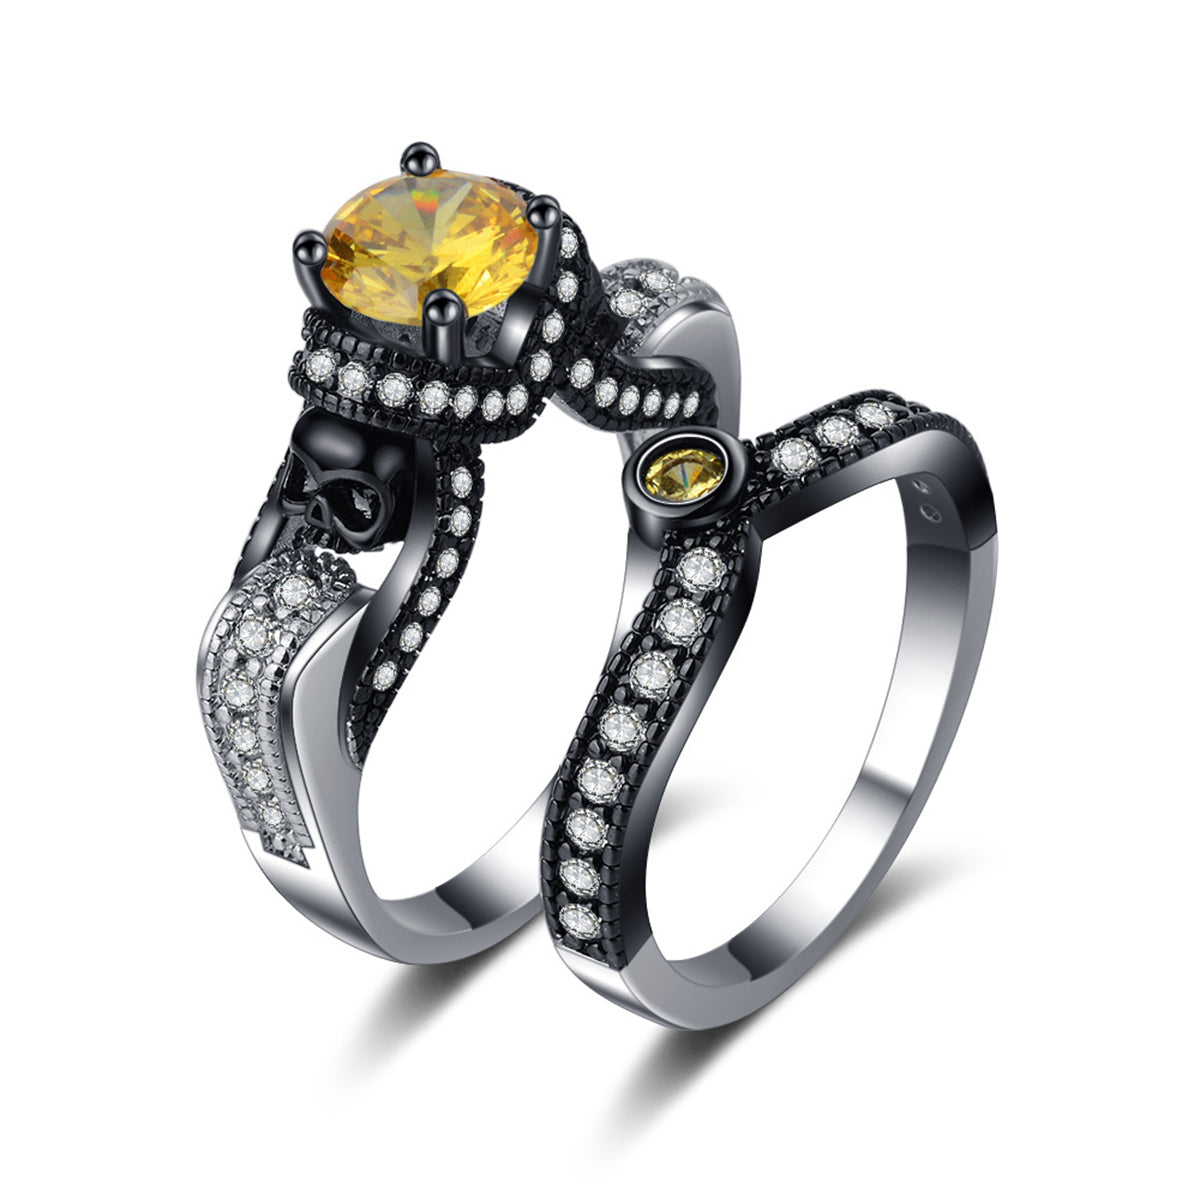 Yellow Crystal & Cubic Zirconia Skull Ring Set